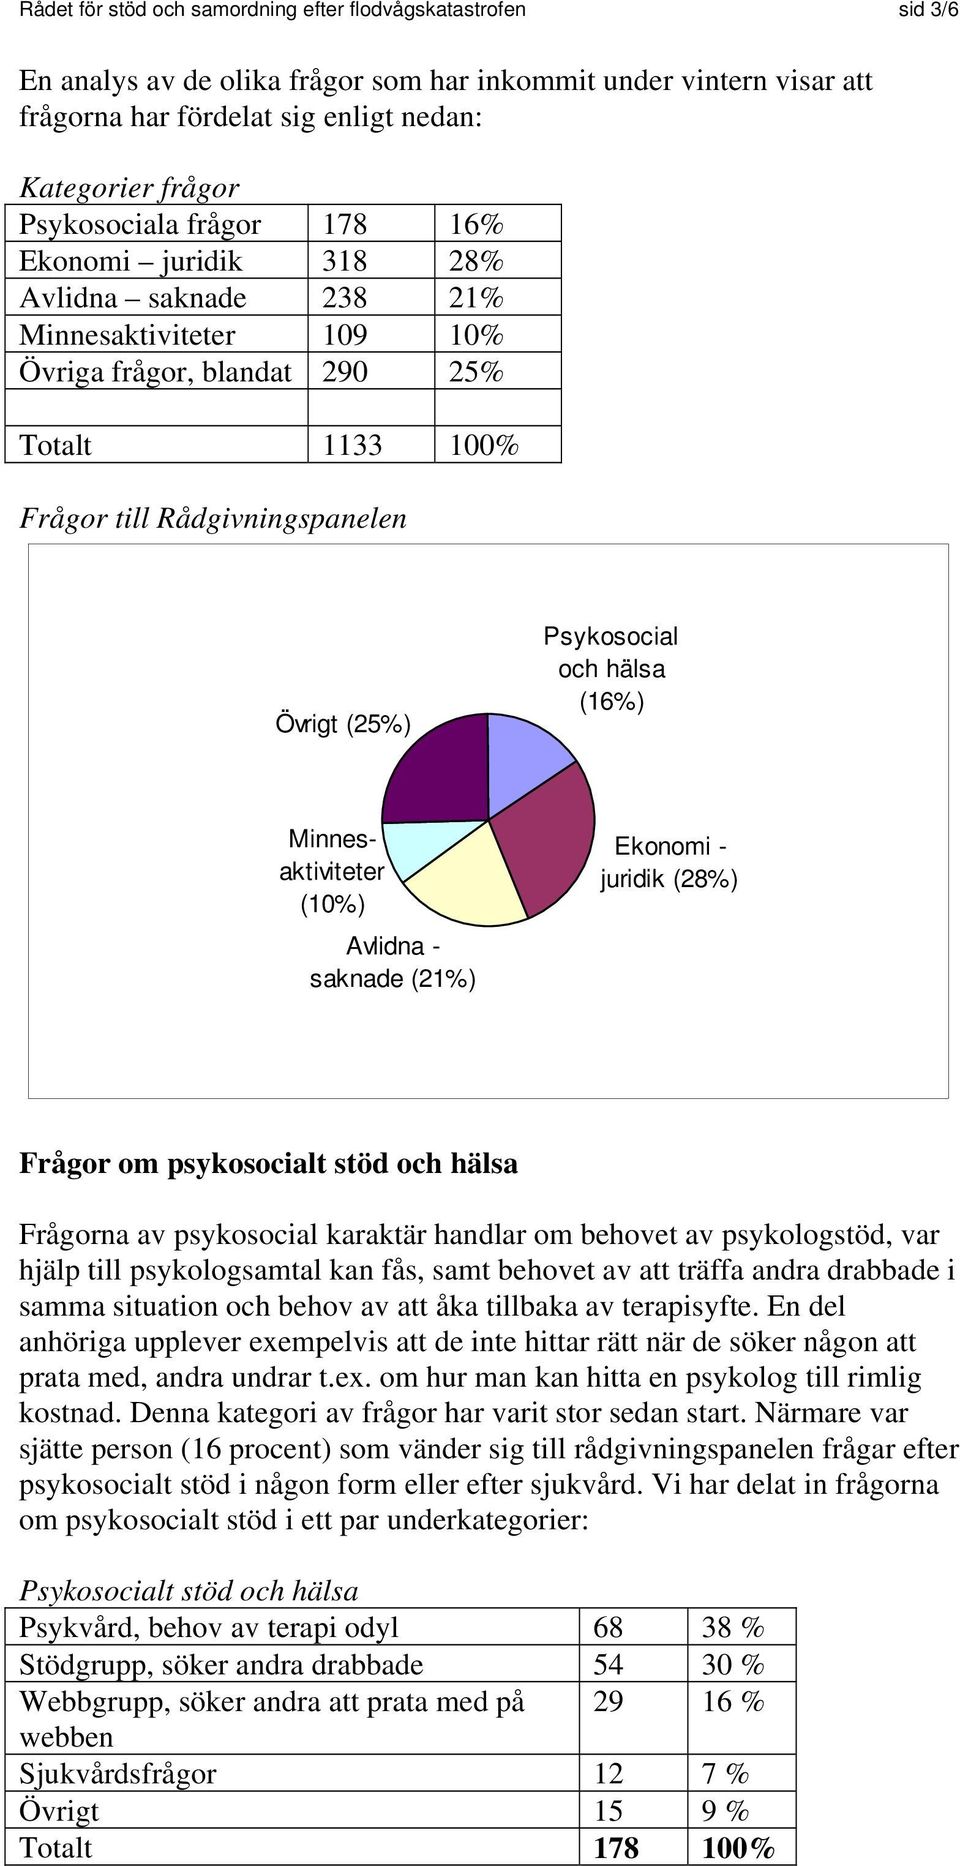 Psykosocial och hälsa (16%) Minnesaktiviteter (10%) Avlidna - saknade (21%) Ekonomi - juridik (28%) Frågor om psykosocialt stöd och hälsa Frågorna av psykosocial karaktär handlar om behovet av